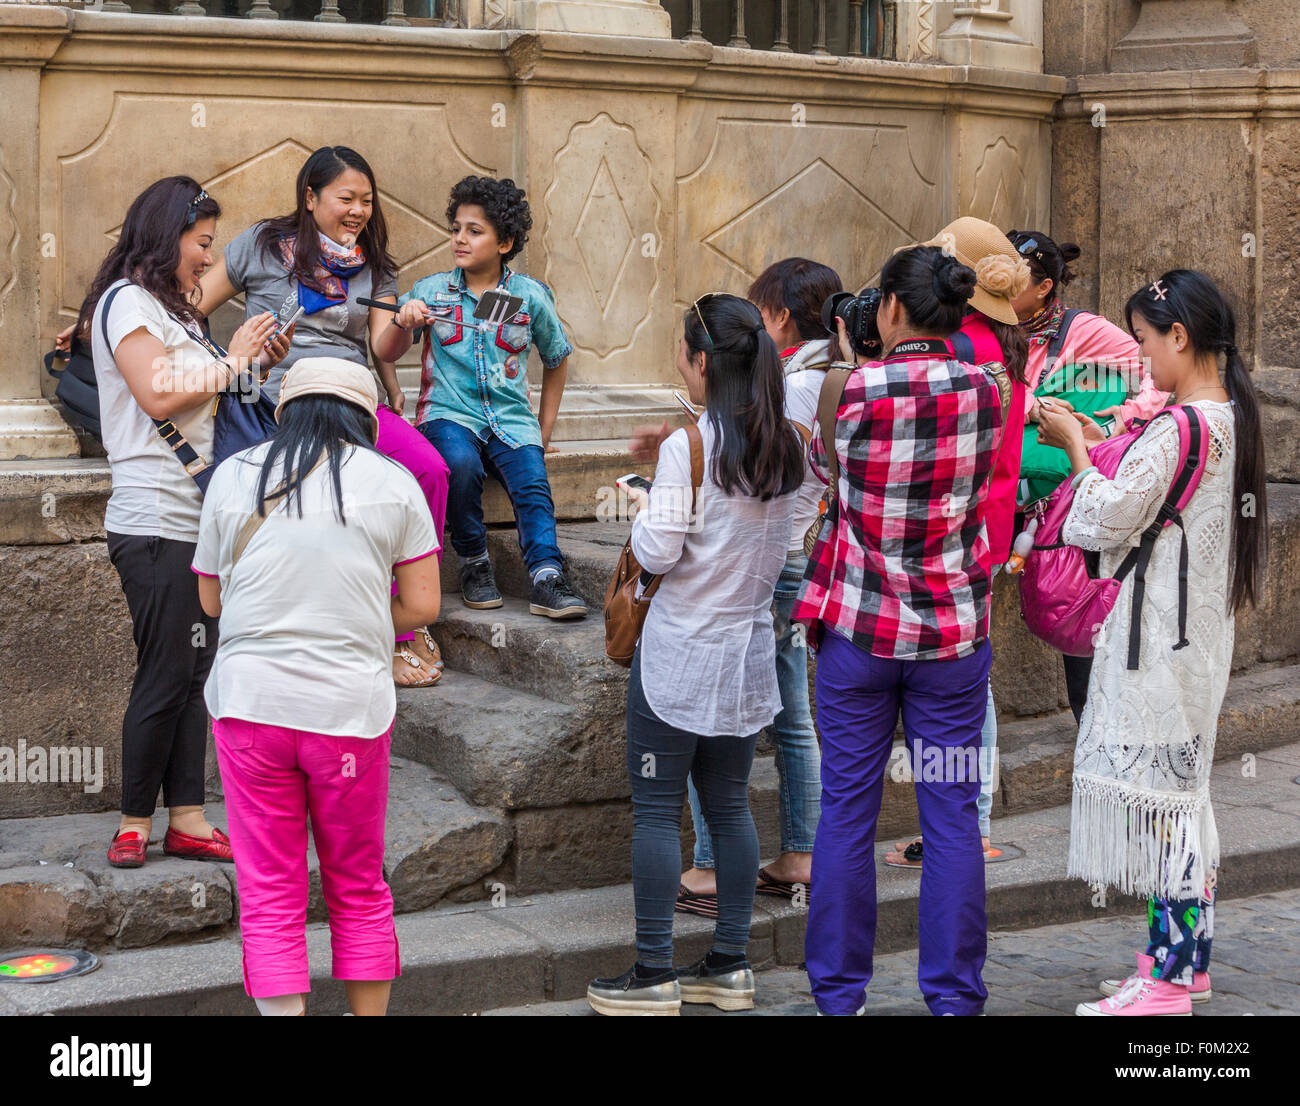 Chinesische Touristen fotografieren ägyptischen Jungen, Kairo, Ägypten Stockfoto